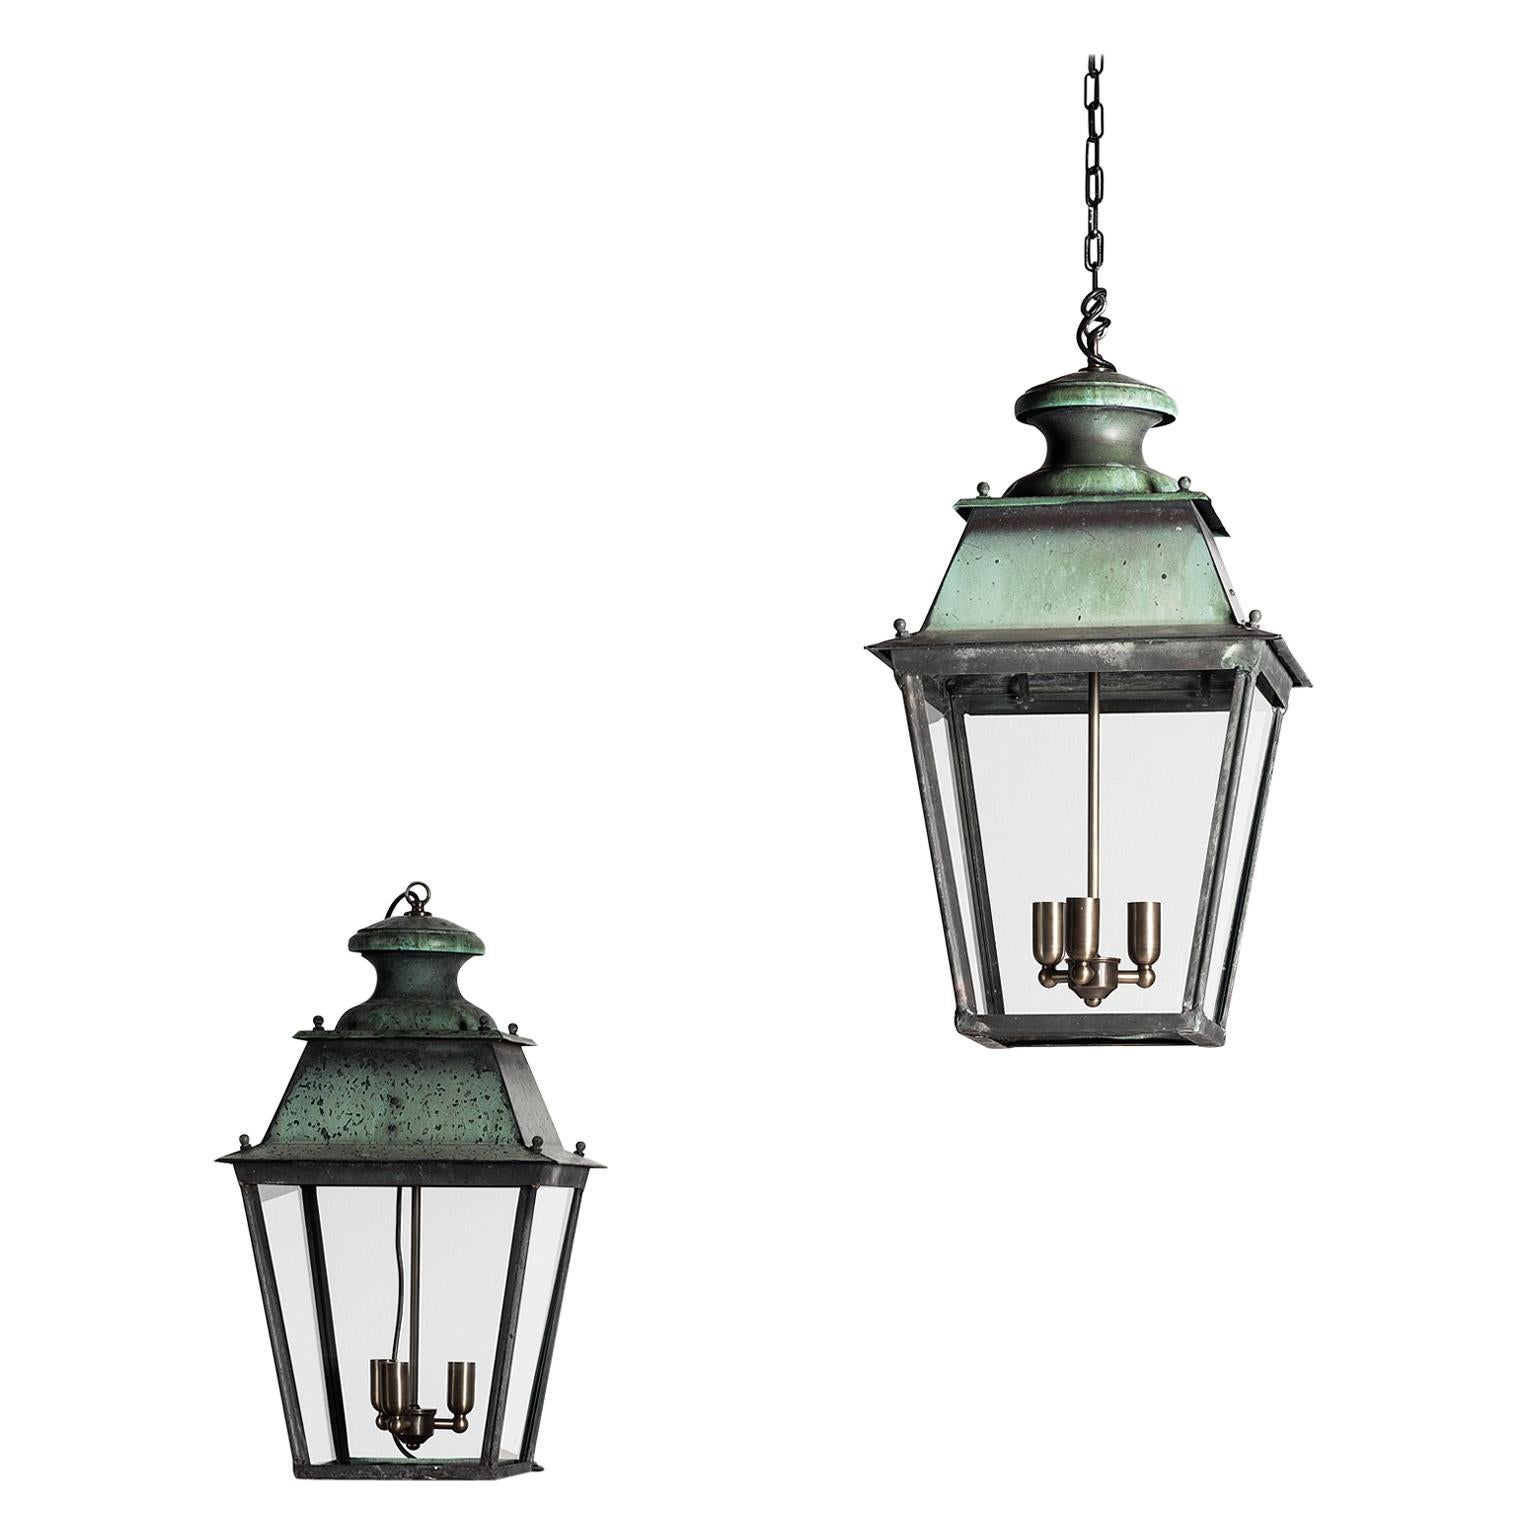 Rare Pair of Large French 19th Century Verdigris Copper Lanterns